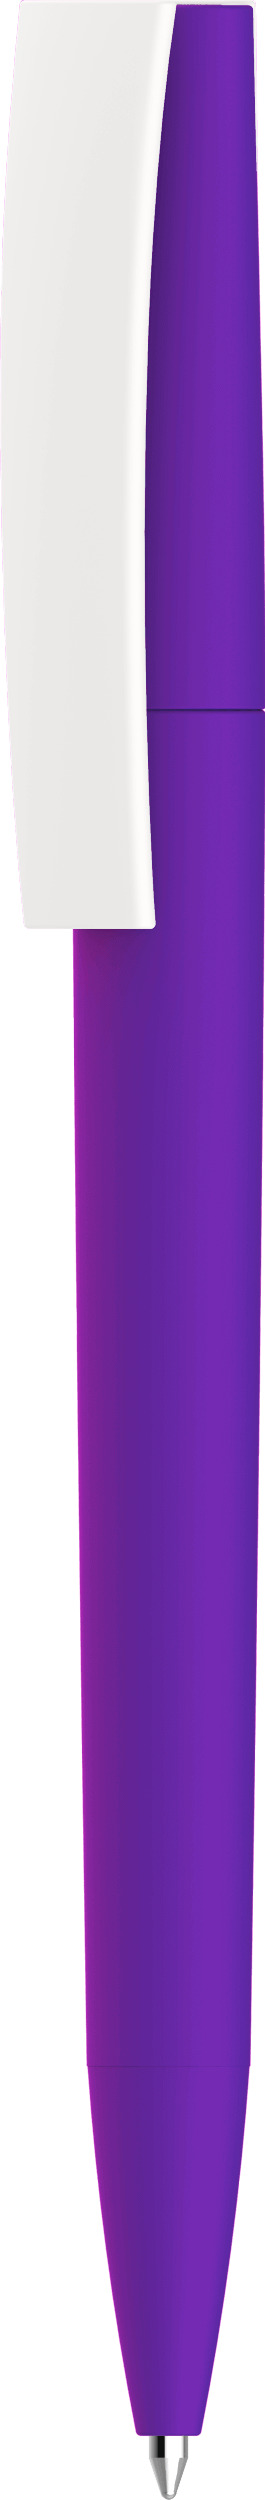 Ручка Zeta Soft, фиолетовая